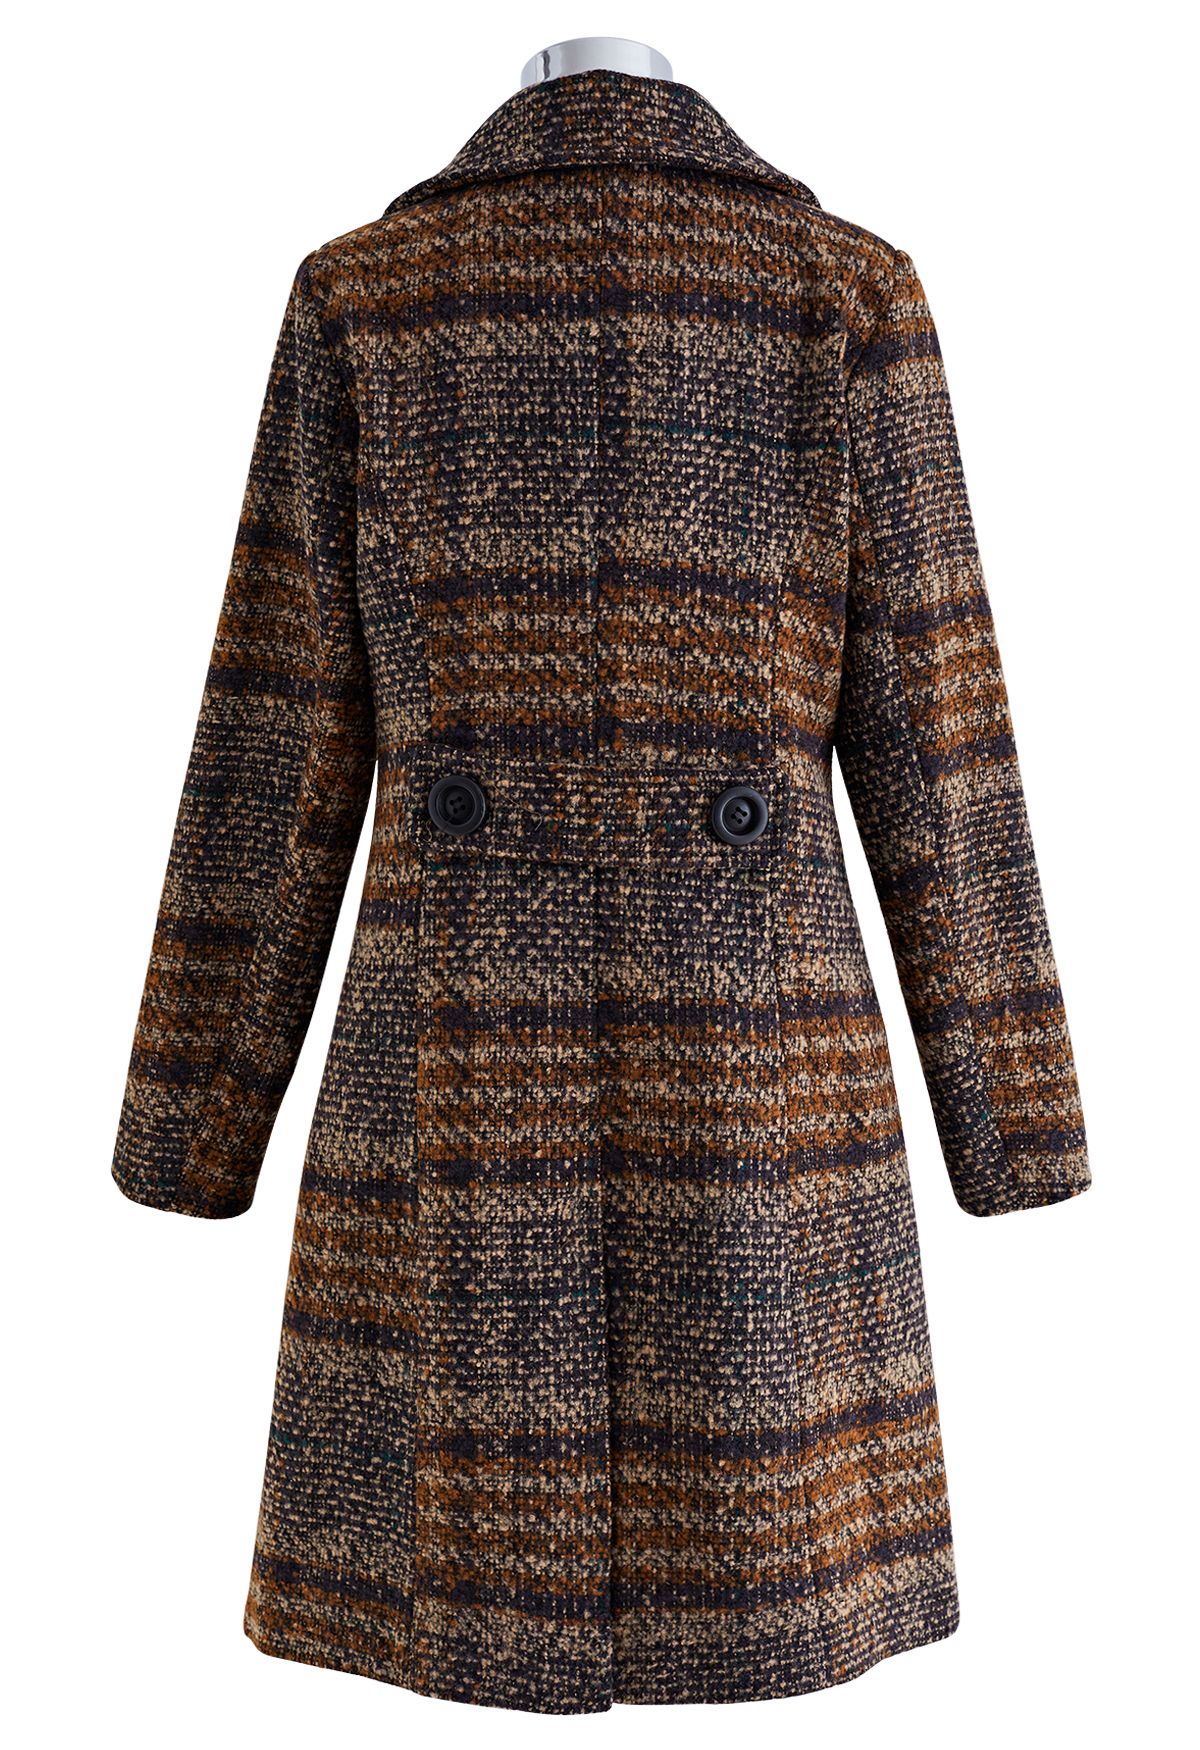 Manteau croisé en laine mélangée à carreaux rétro en marron